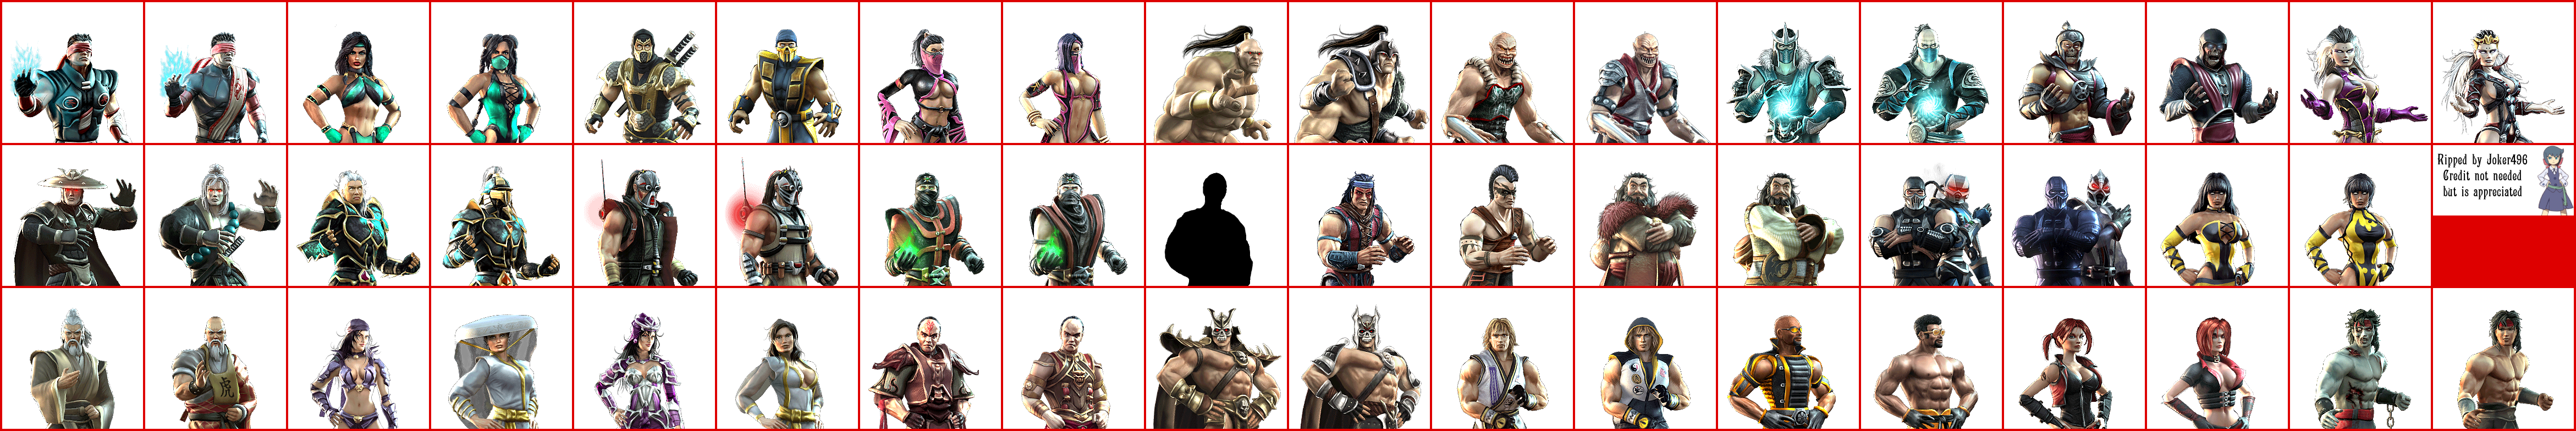 Mortal Kombat Deception - Character Select Portraits